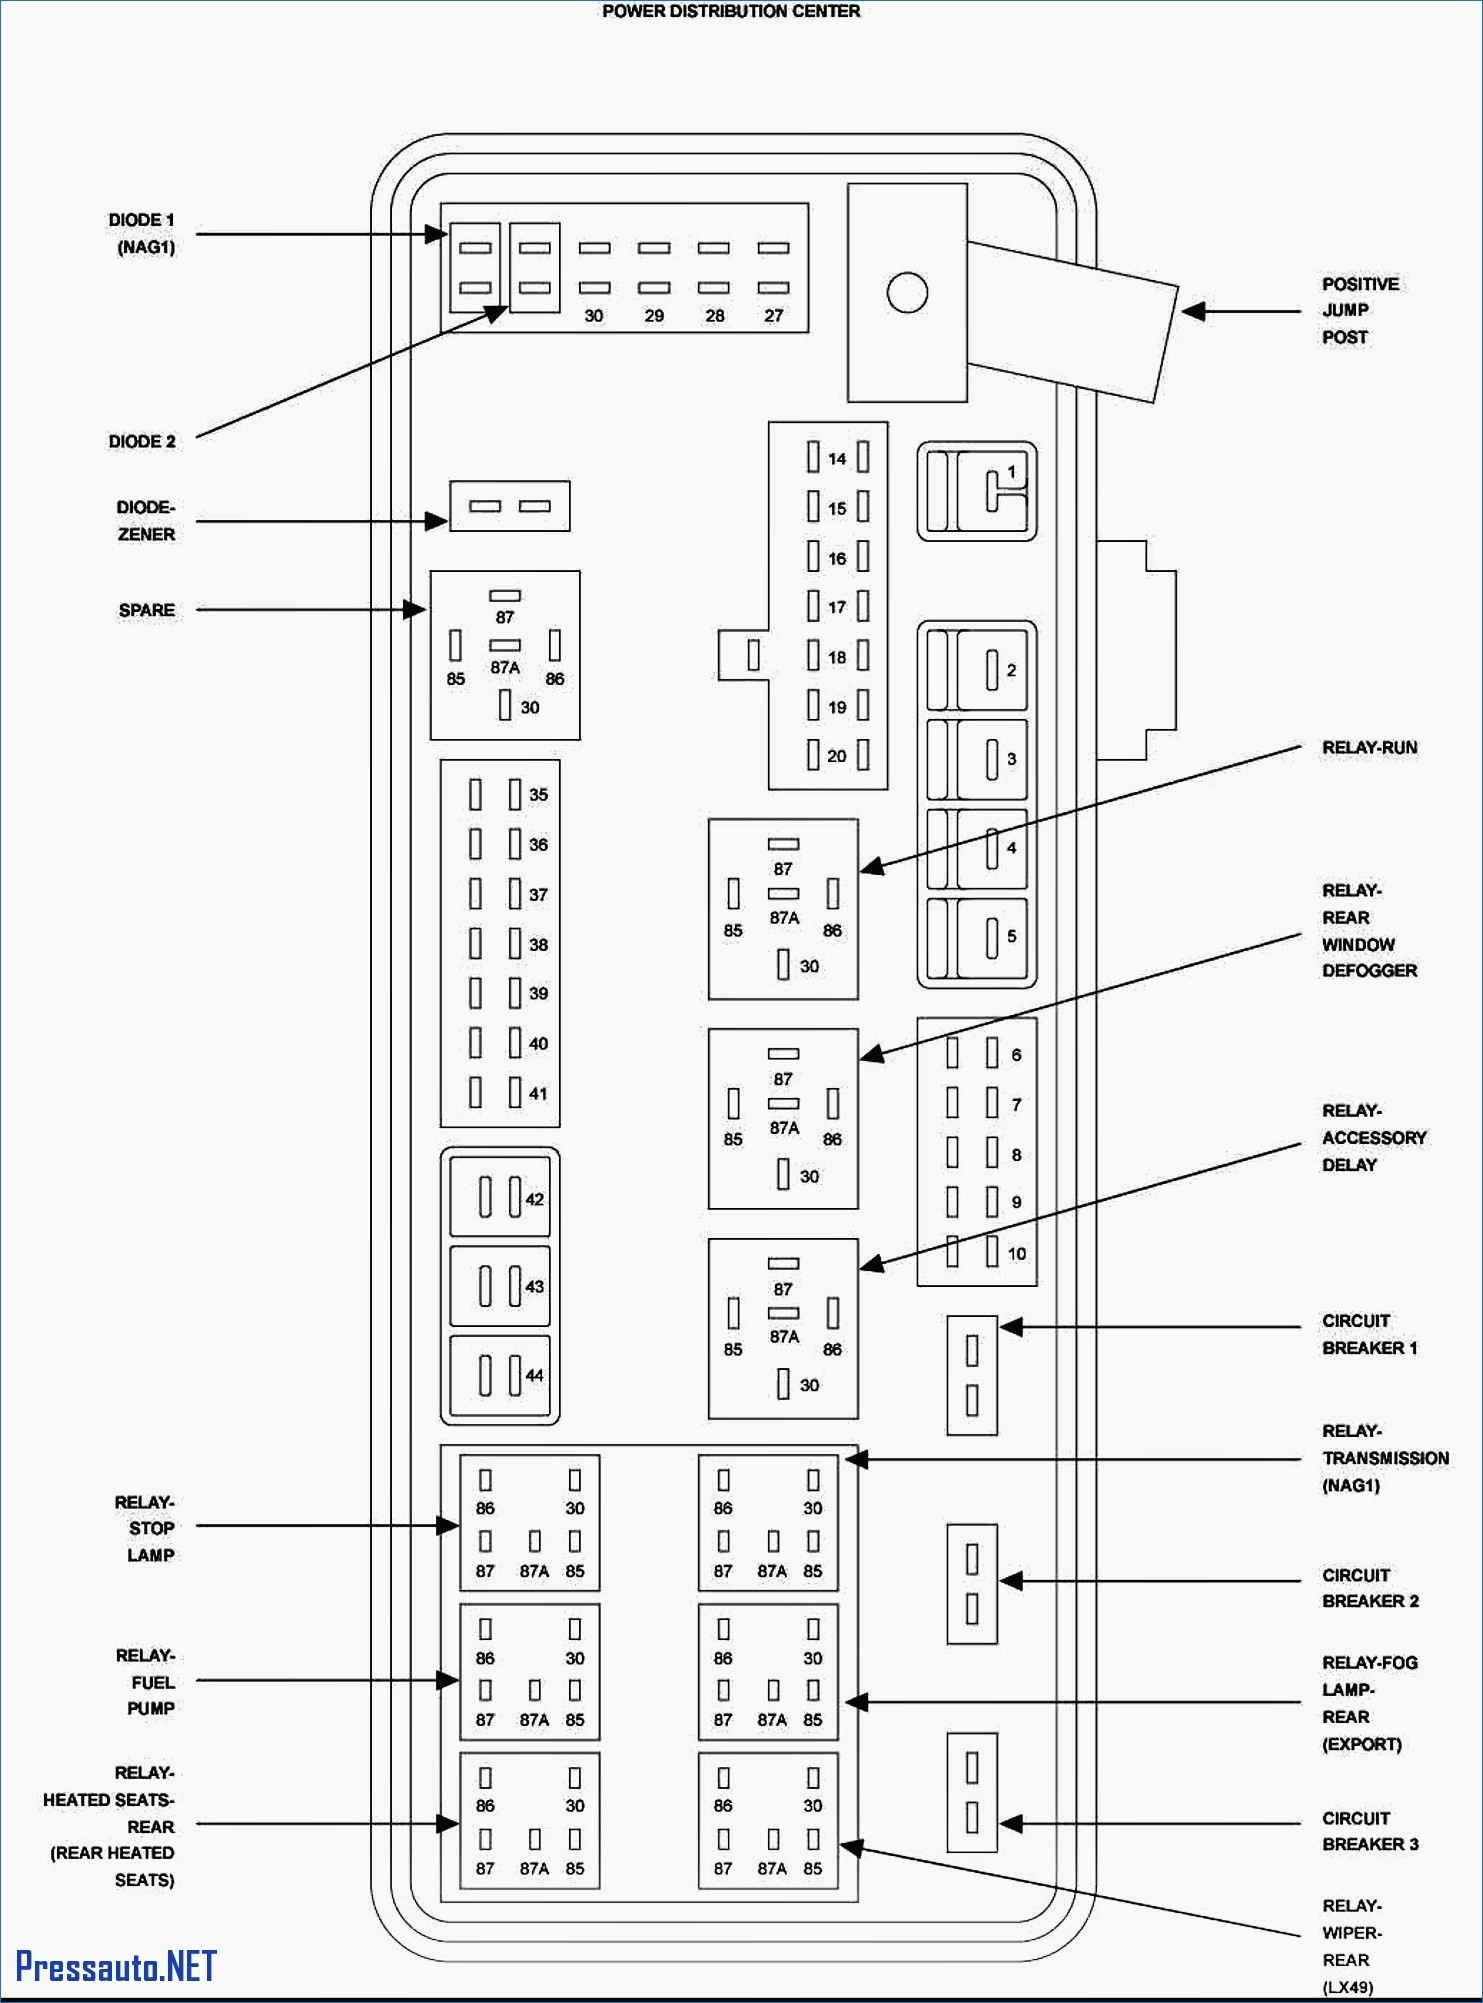 Circuit Diagram Maker Fuse Block Circuit Diagram Wiring Diagram Directory